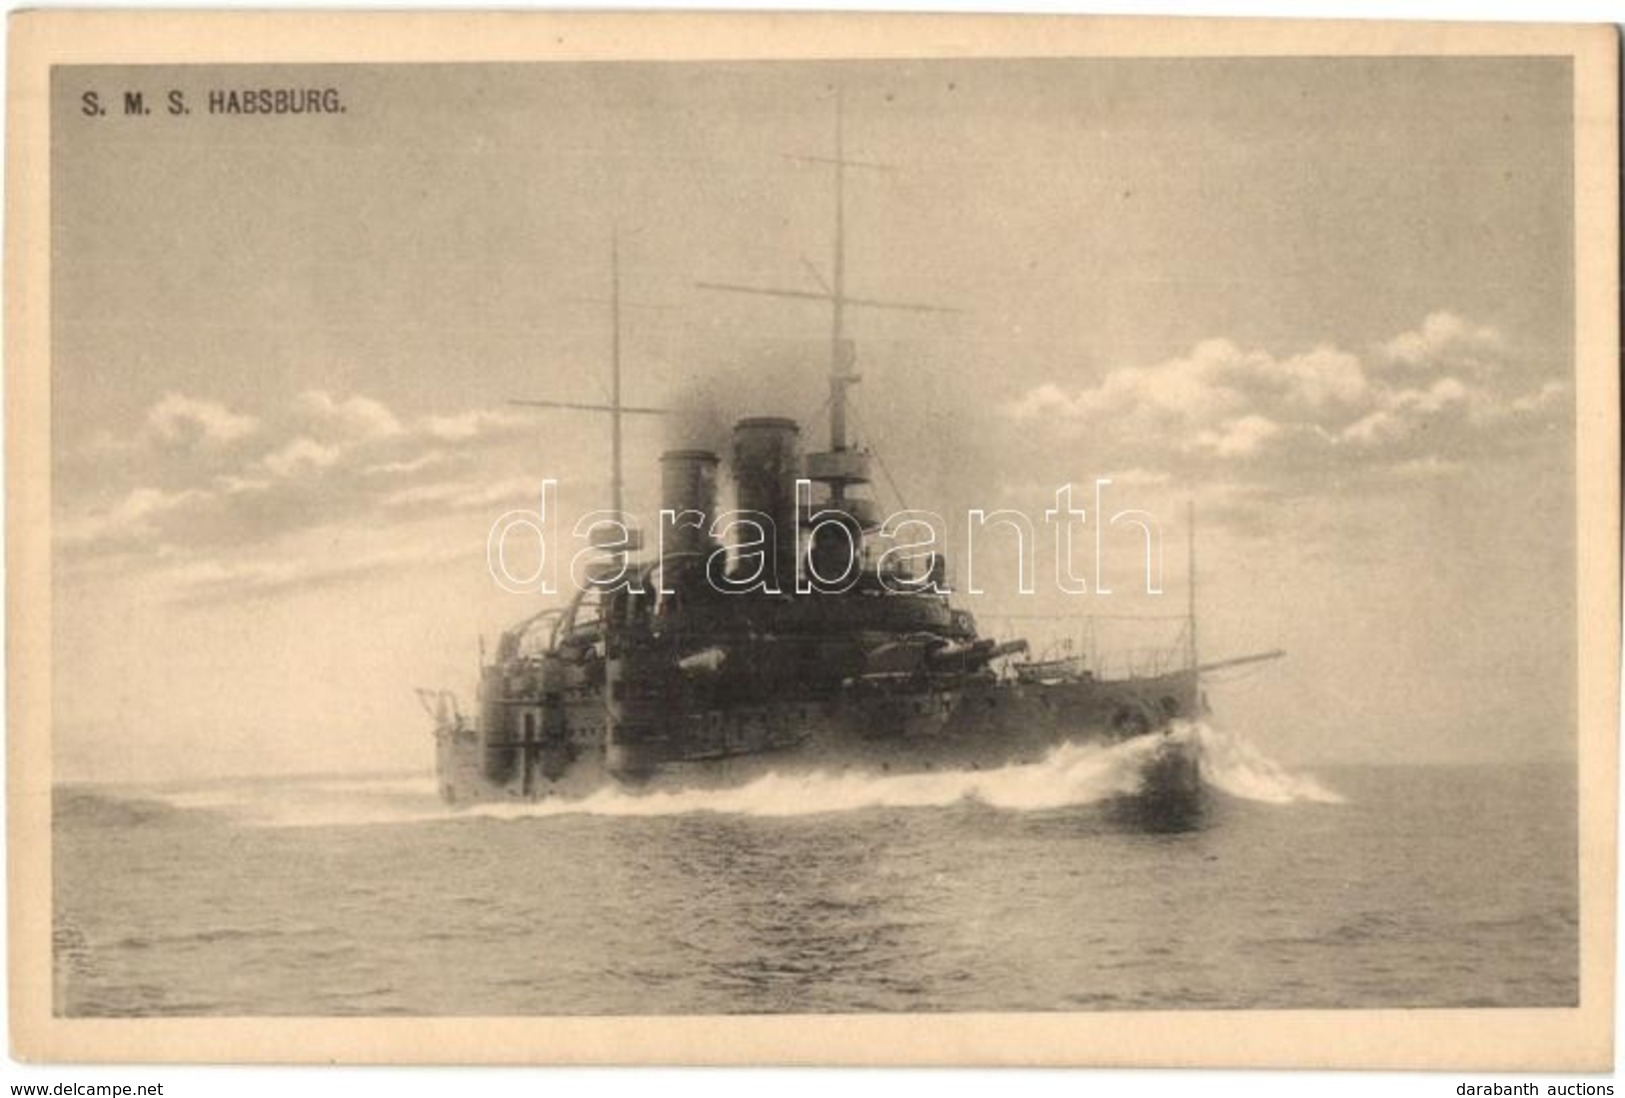 ** T1/T2 SMS Habsburg Osztrák-magyar Habsburg-osztályú Pre-dreadnought Csatahajó / K.u.K. Kriegsmarine SMS Habsburg. Pho - Unclassified